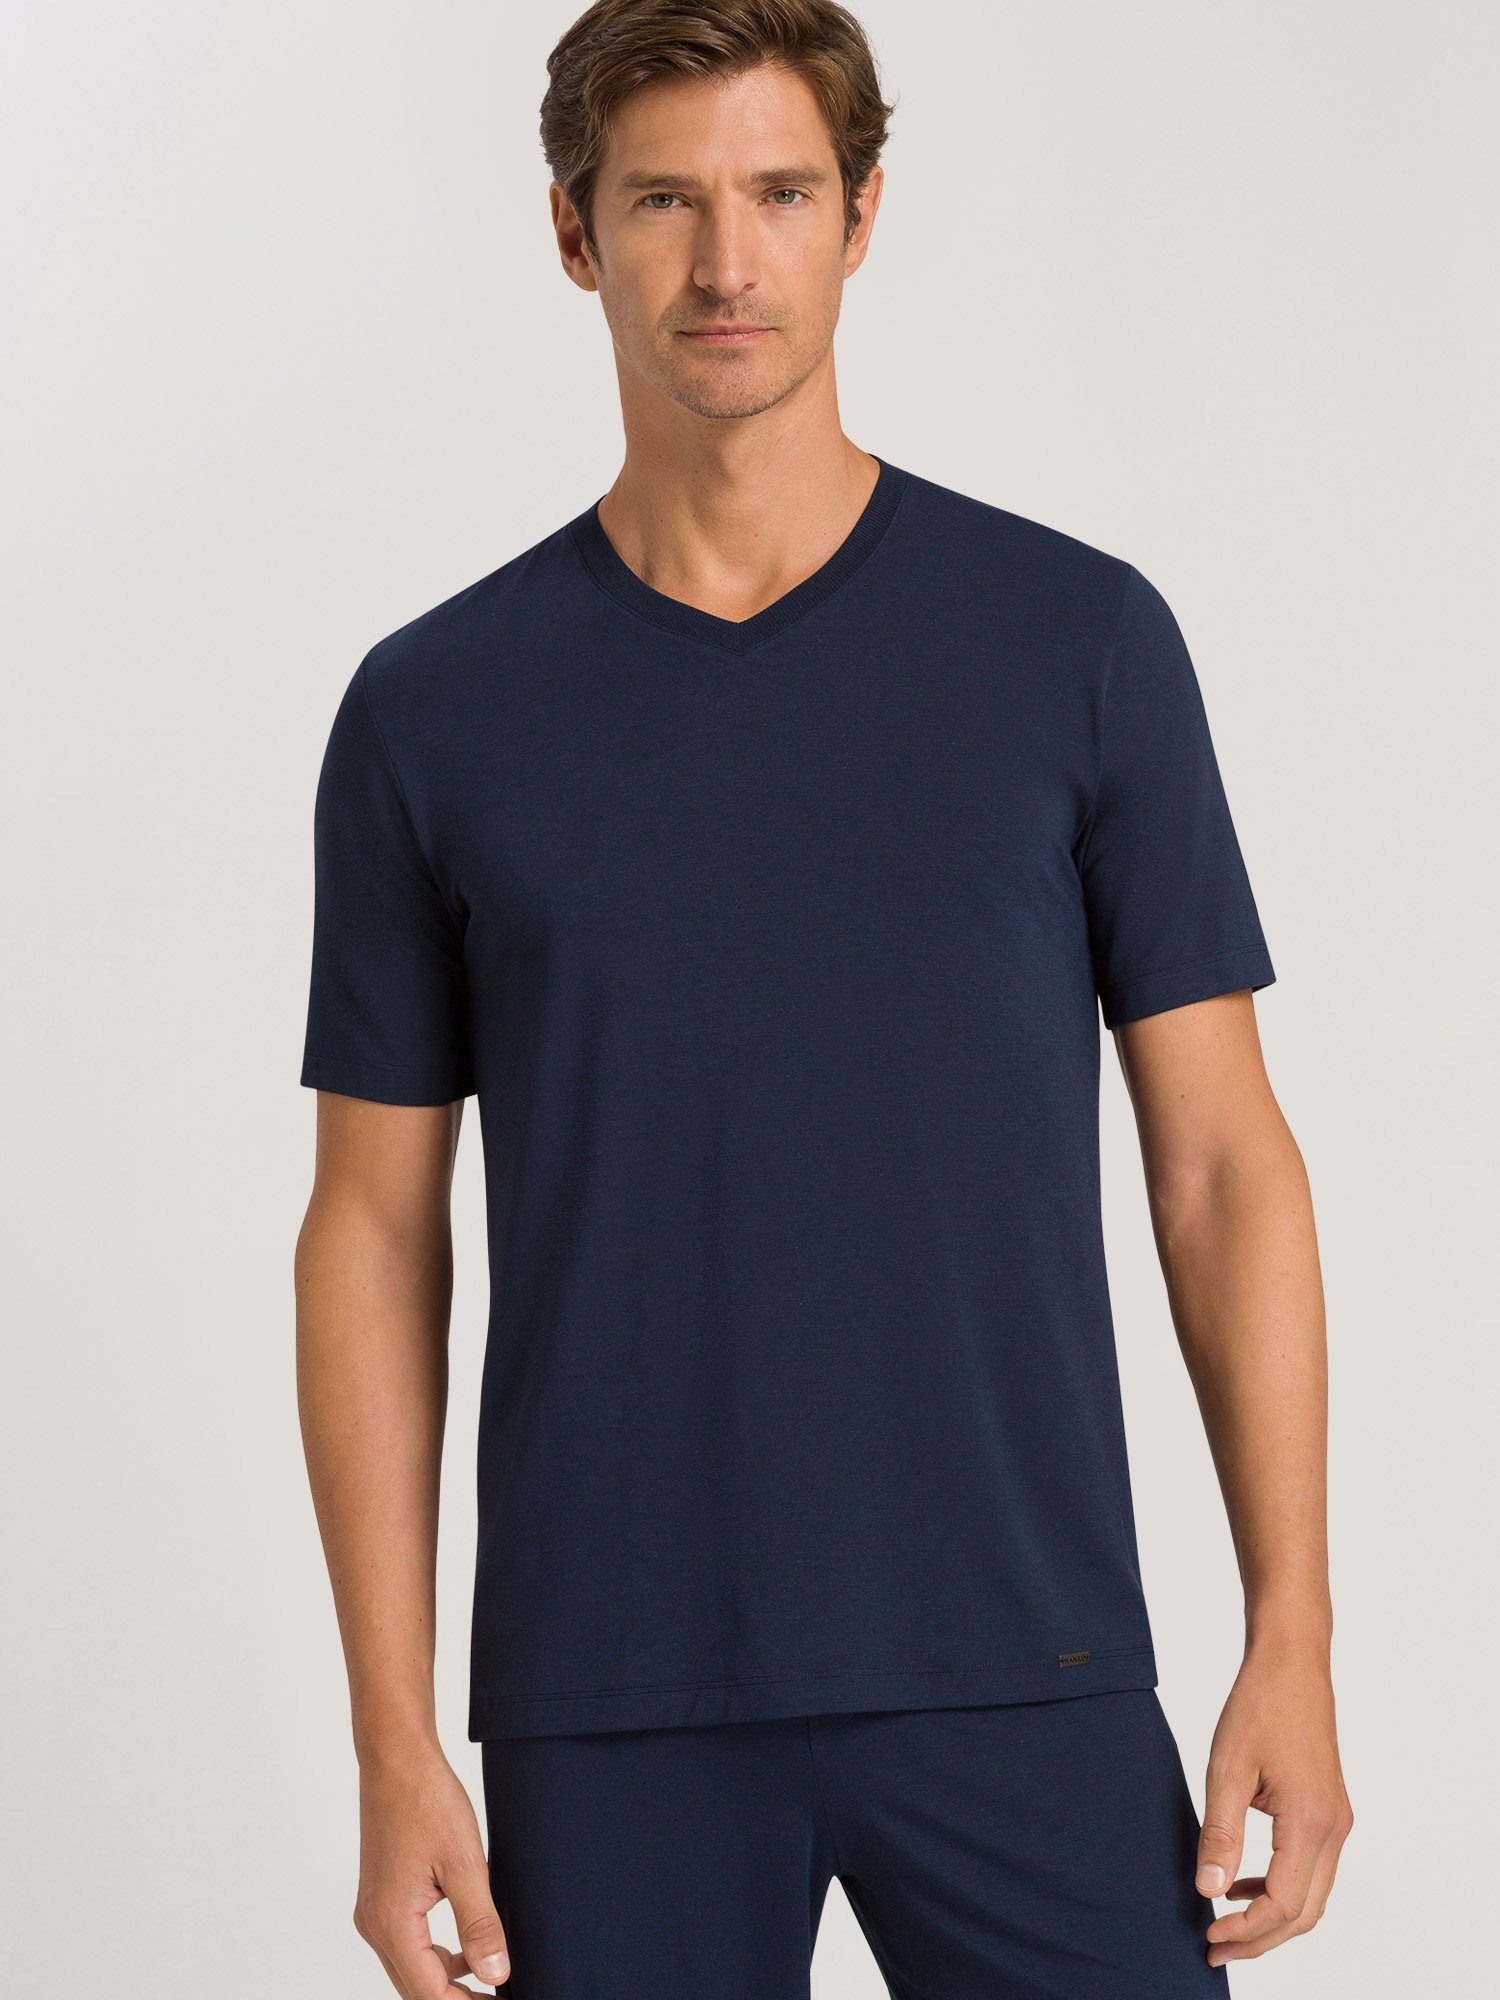 Hanro navy Casuals V-Shirt deep